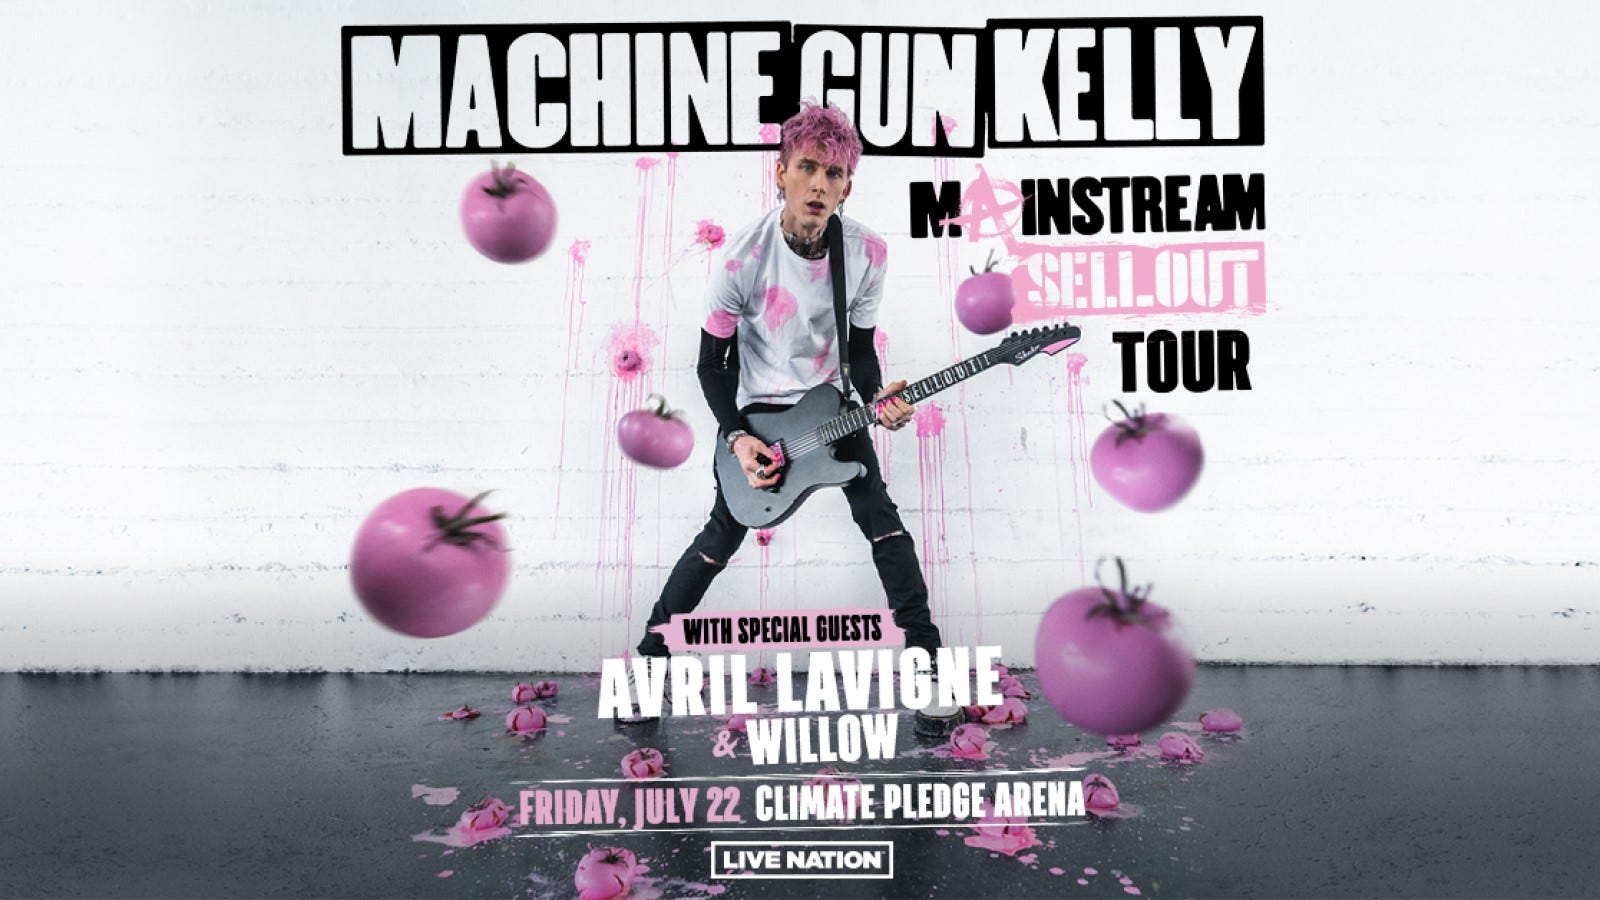 Win tickets to see Machine Gun Kelly!